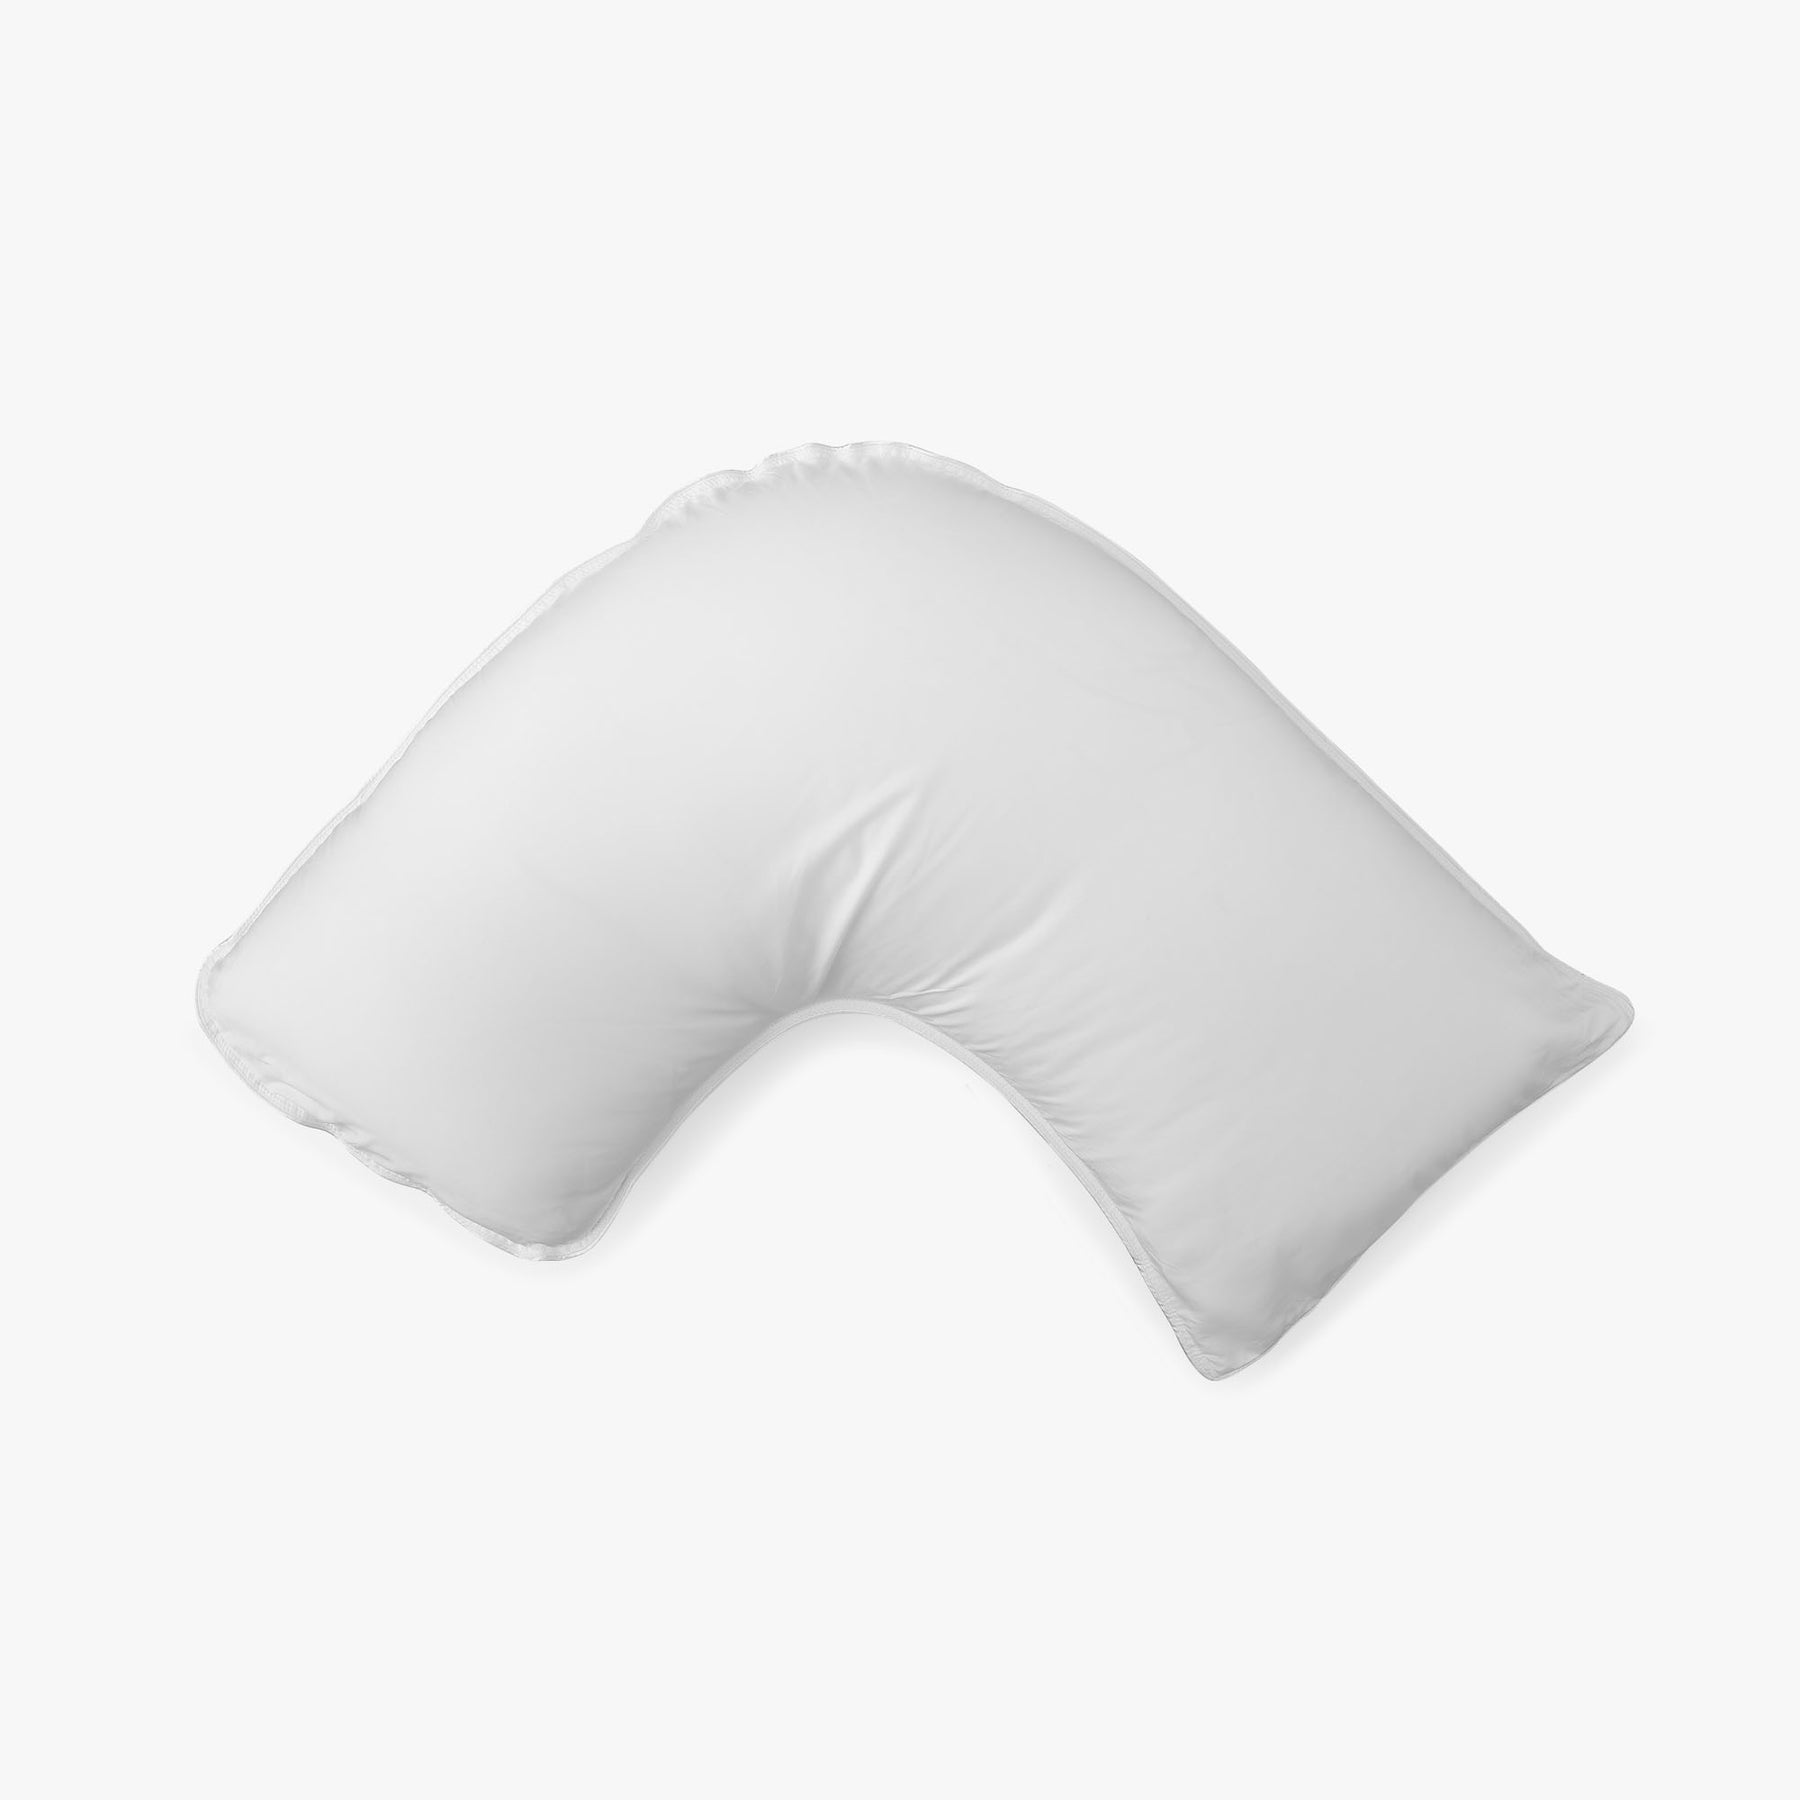 Back Sleeper Pillow - Dr. Marink's Sleep Pillows